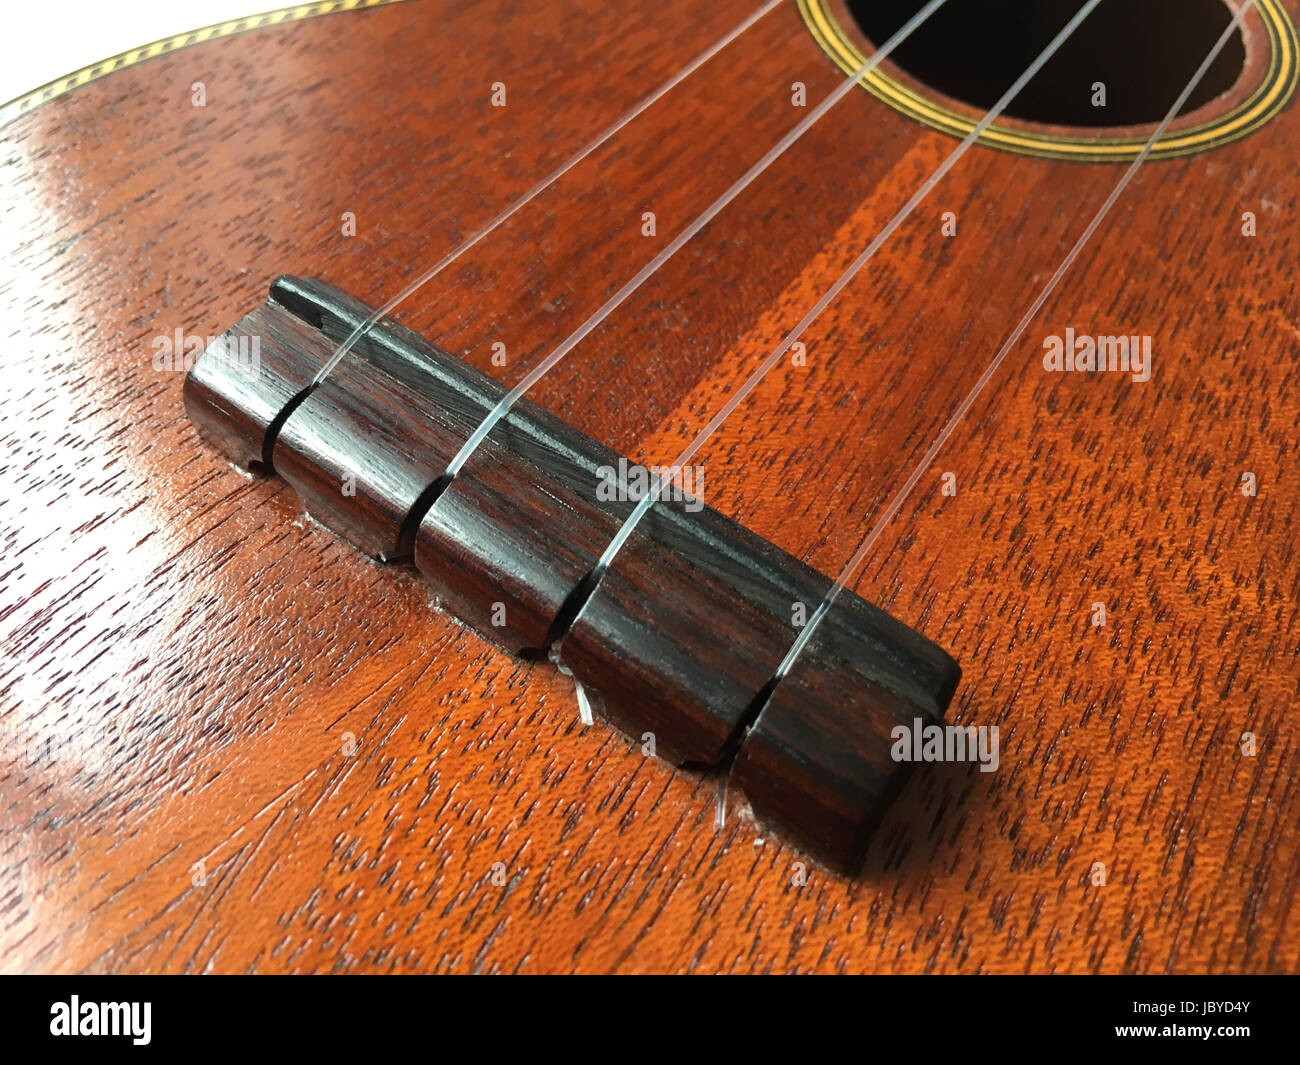 Wunderkammer ukulele, solid mahogany soprano uke Stock Photo